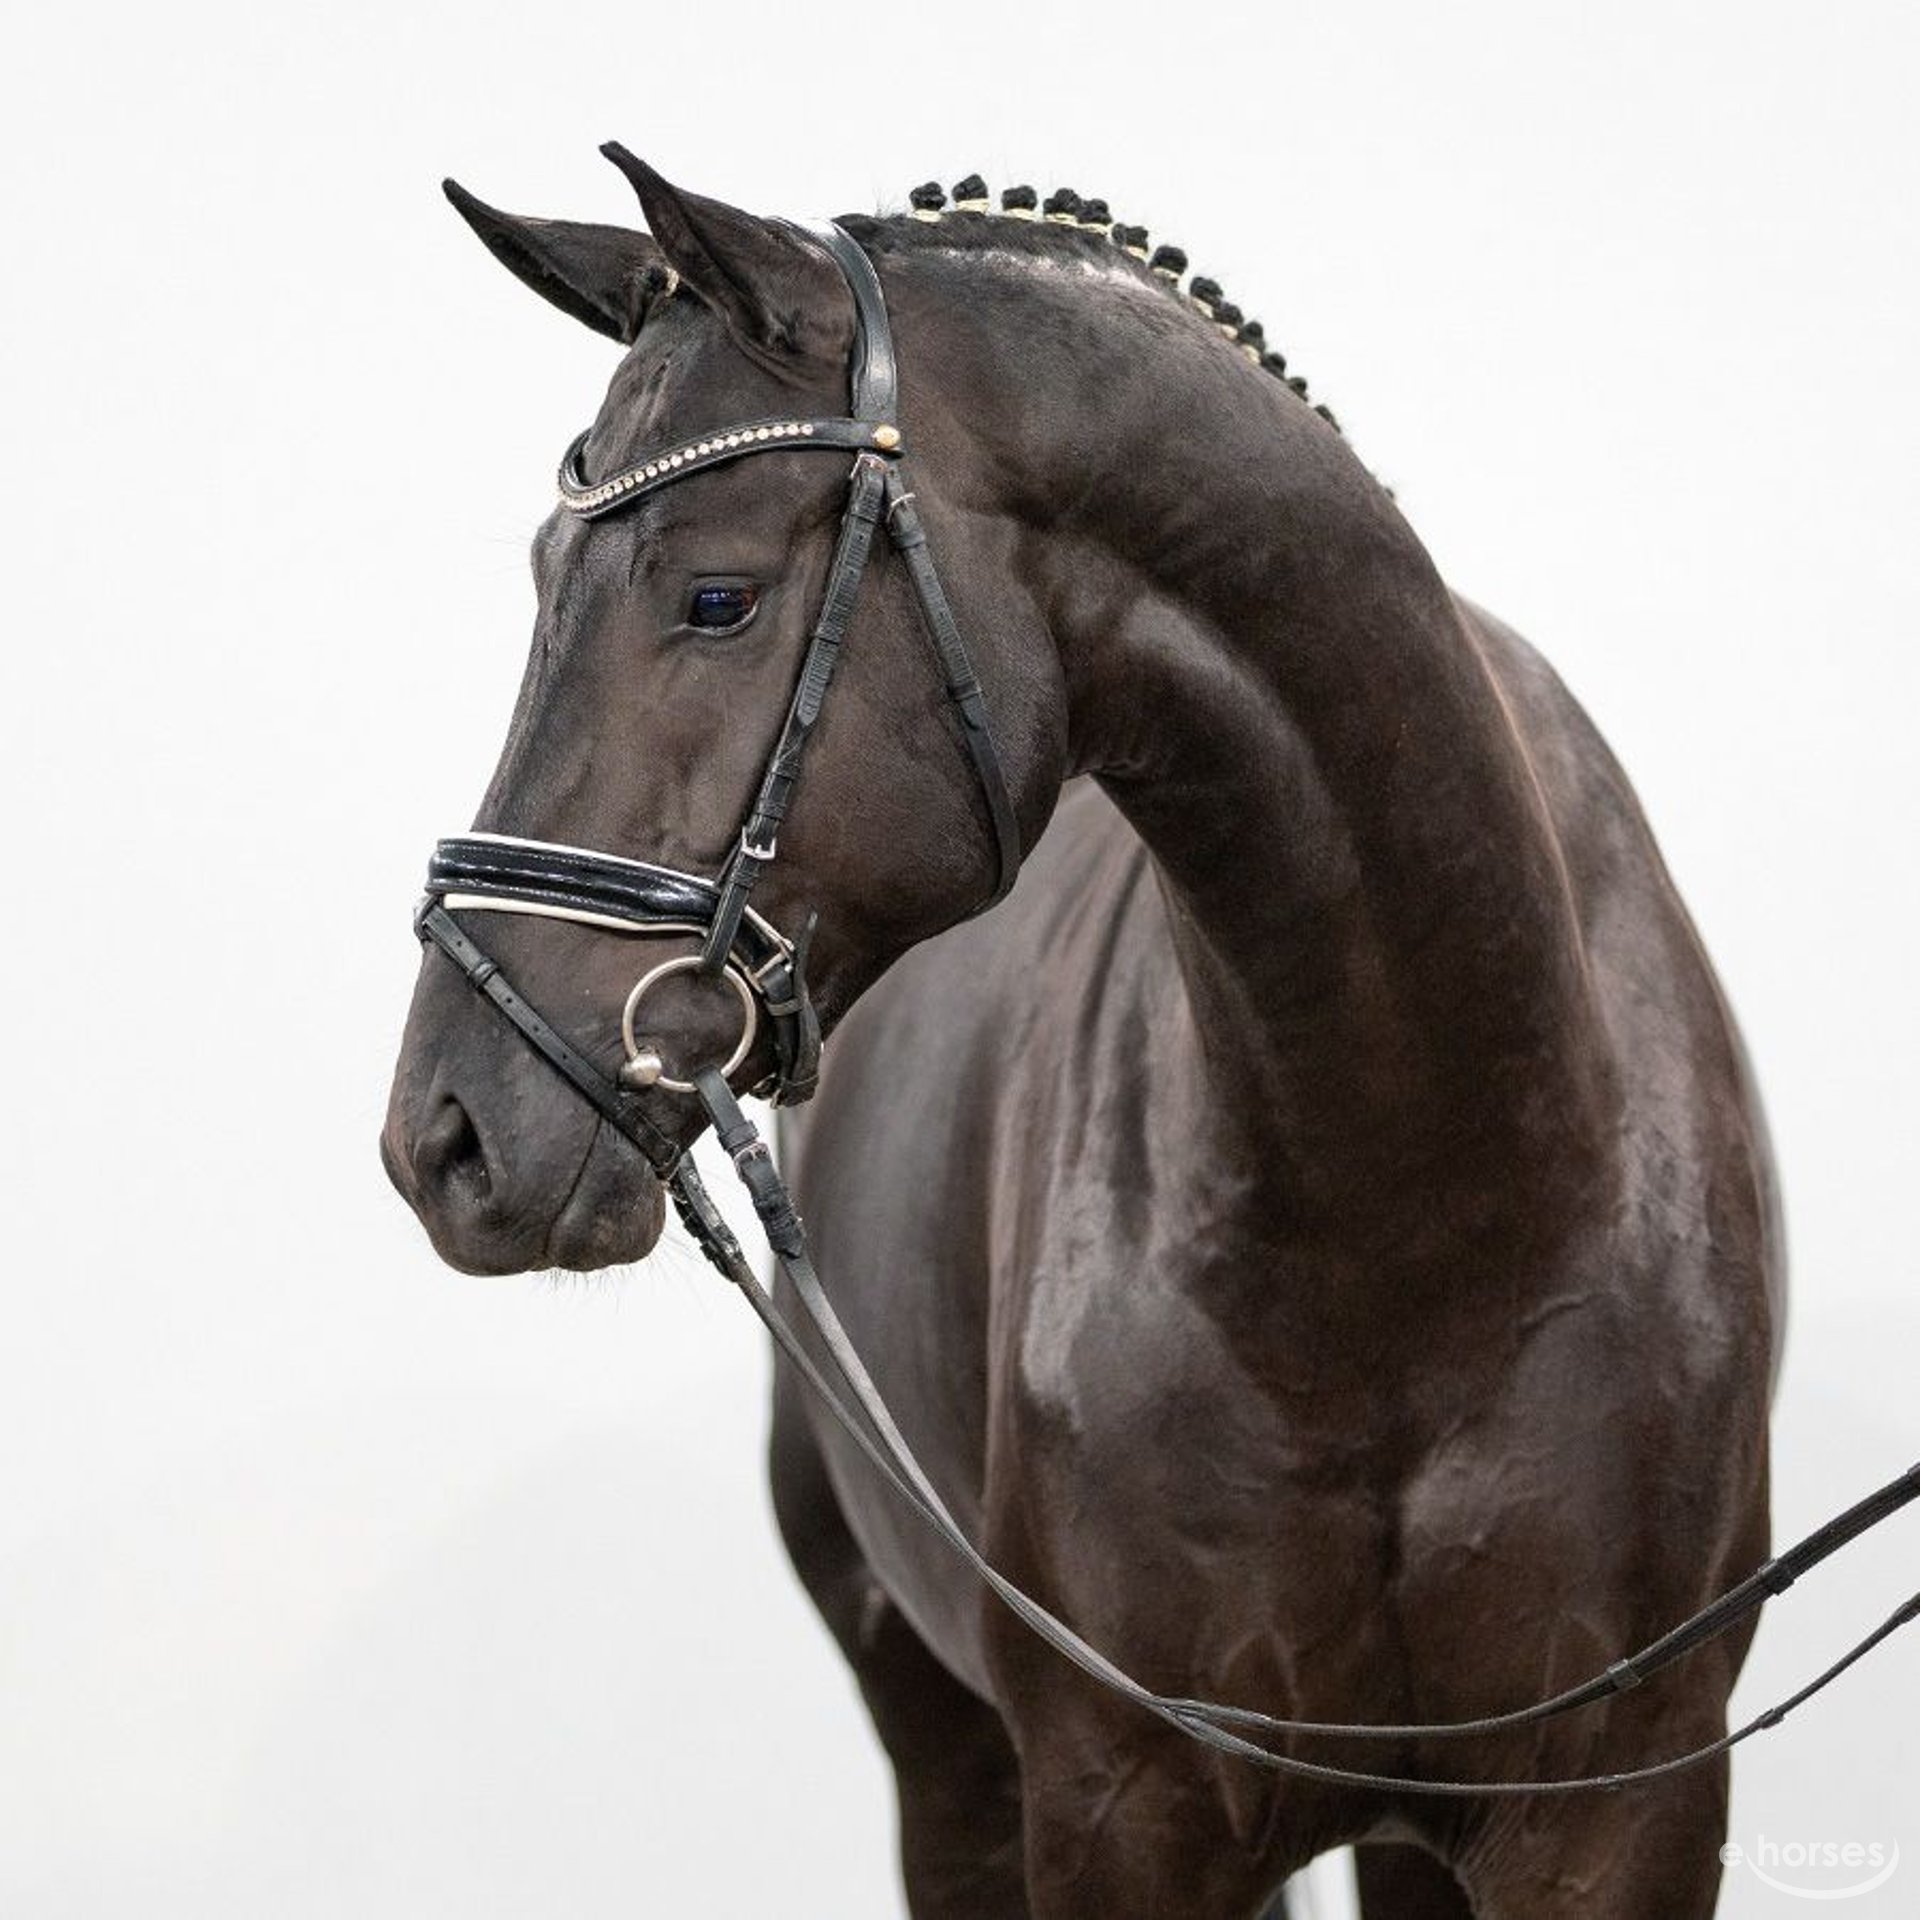 Oldenburg Stallion 2 years Black in Münster-Handorf